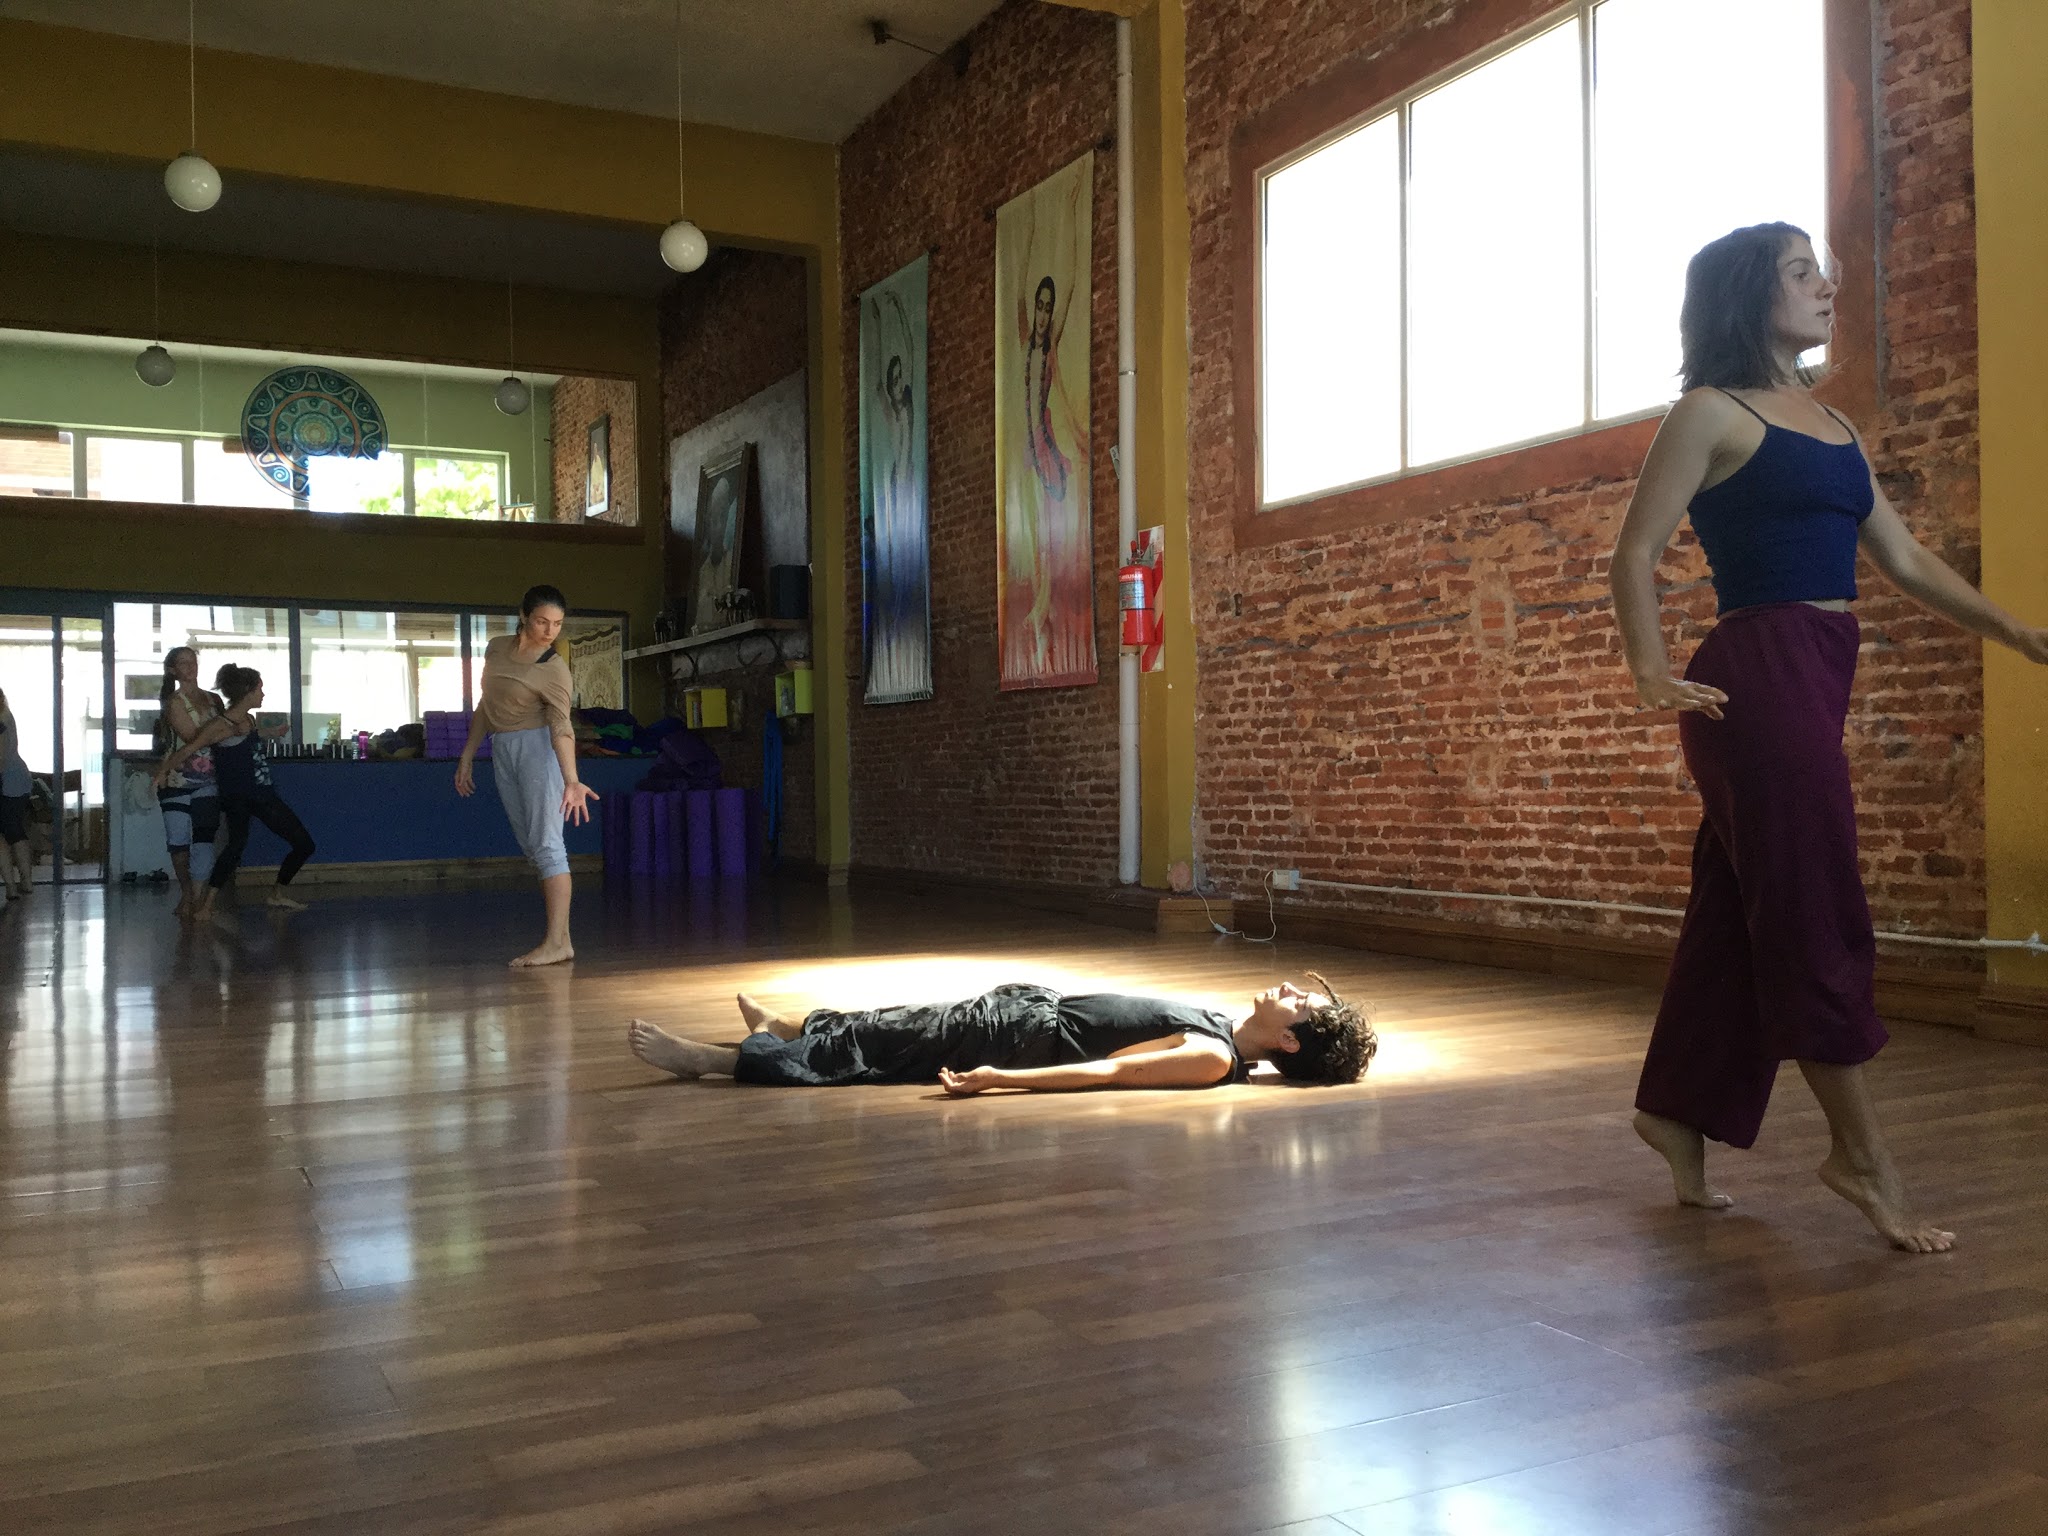 Danza contemporánea: “La mujer que ronca, se posiciona y manda”